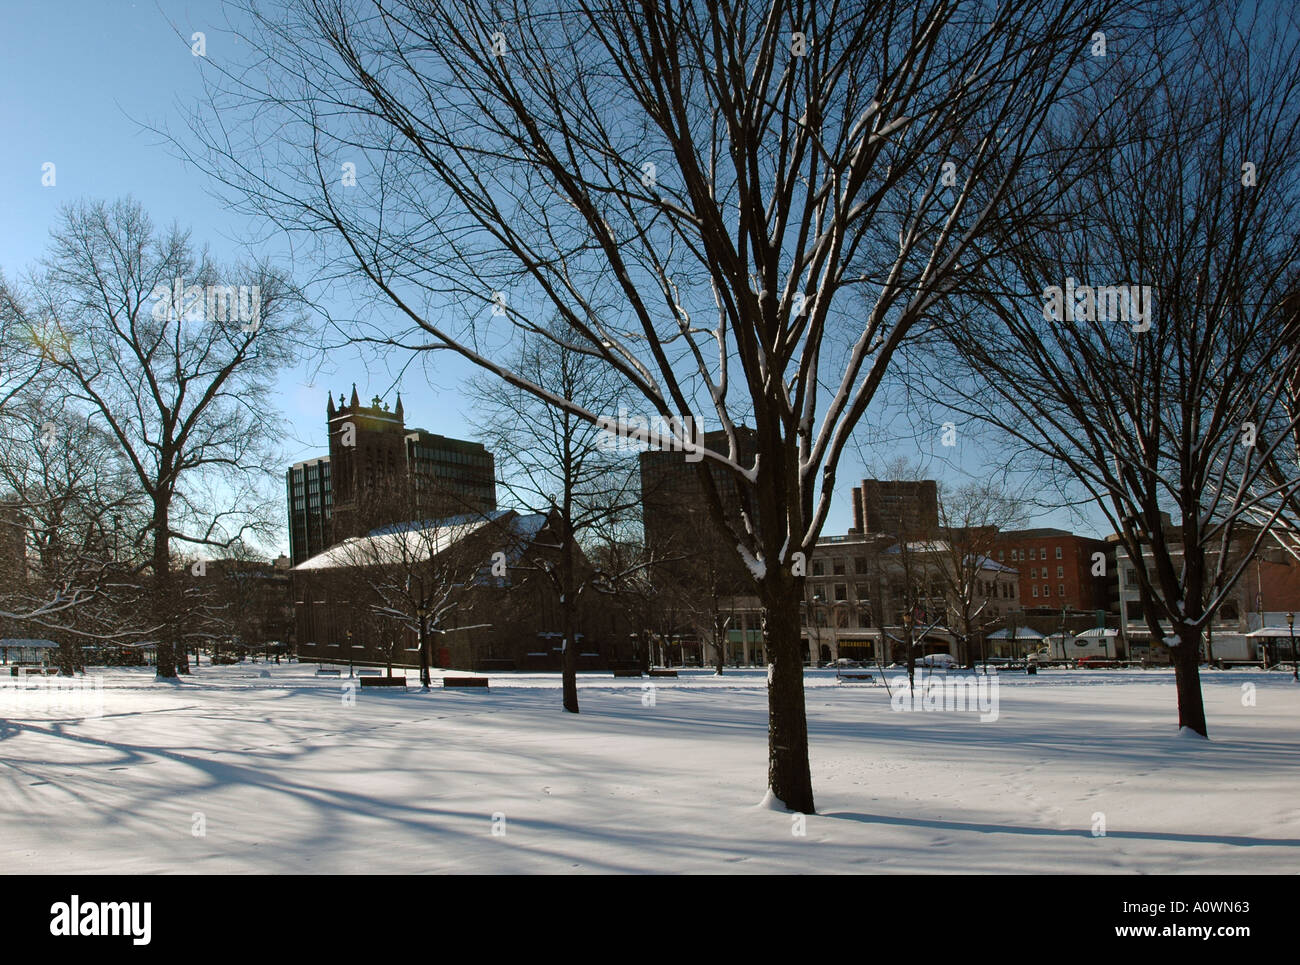 La neige et les arbres vert de New Haven New Haven New York City Scenics Centre d'affaires de l'hiver Banque D'Images